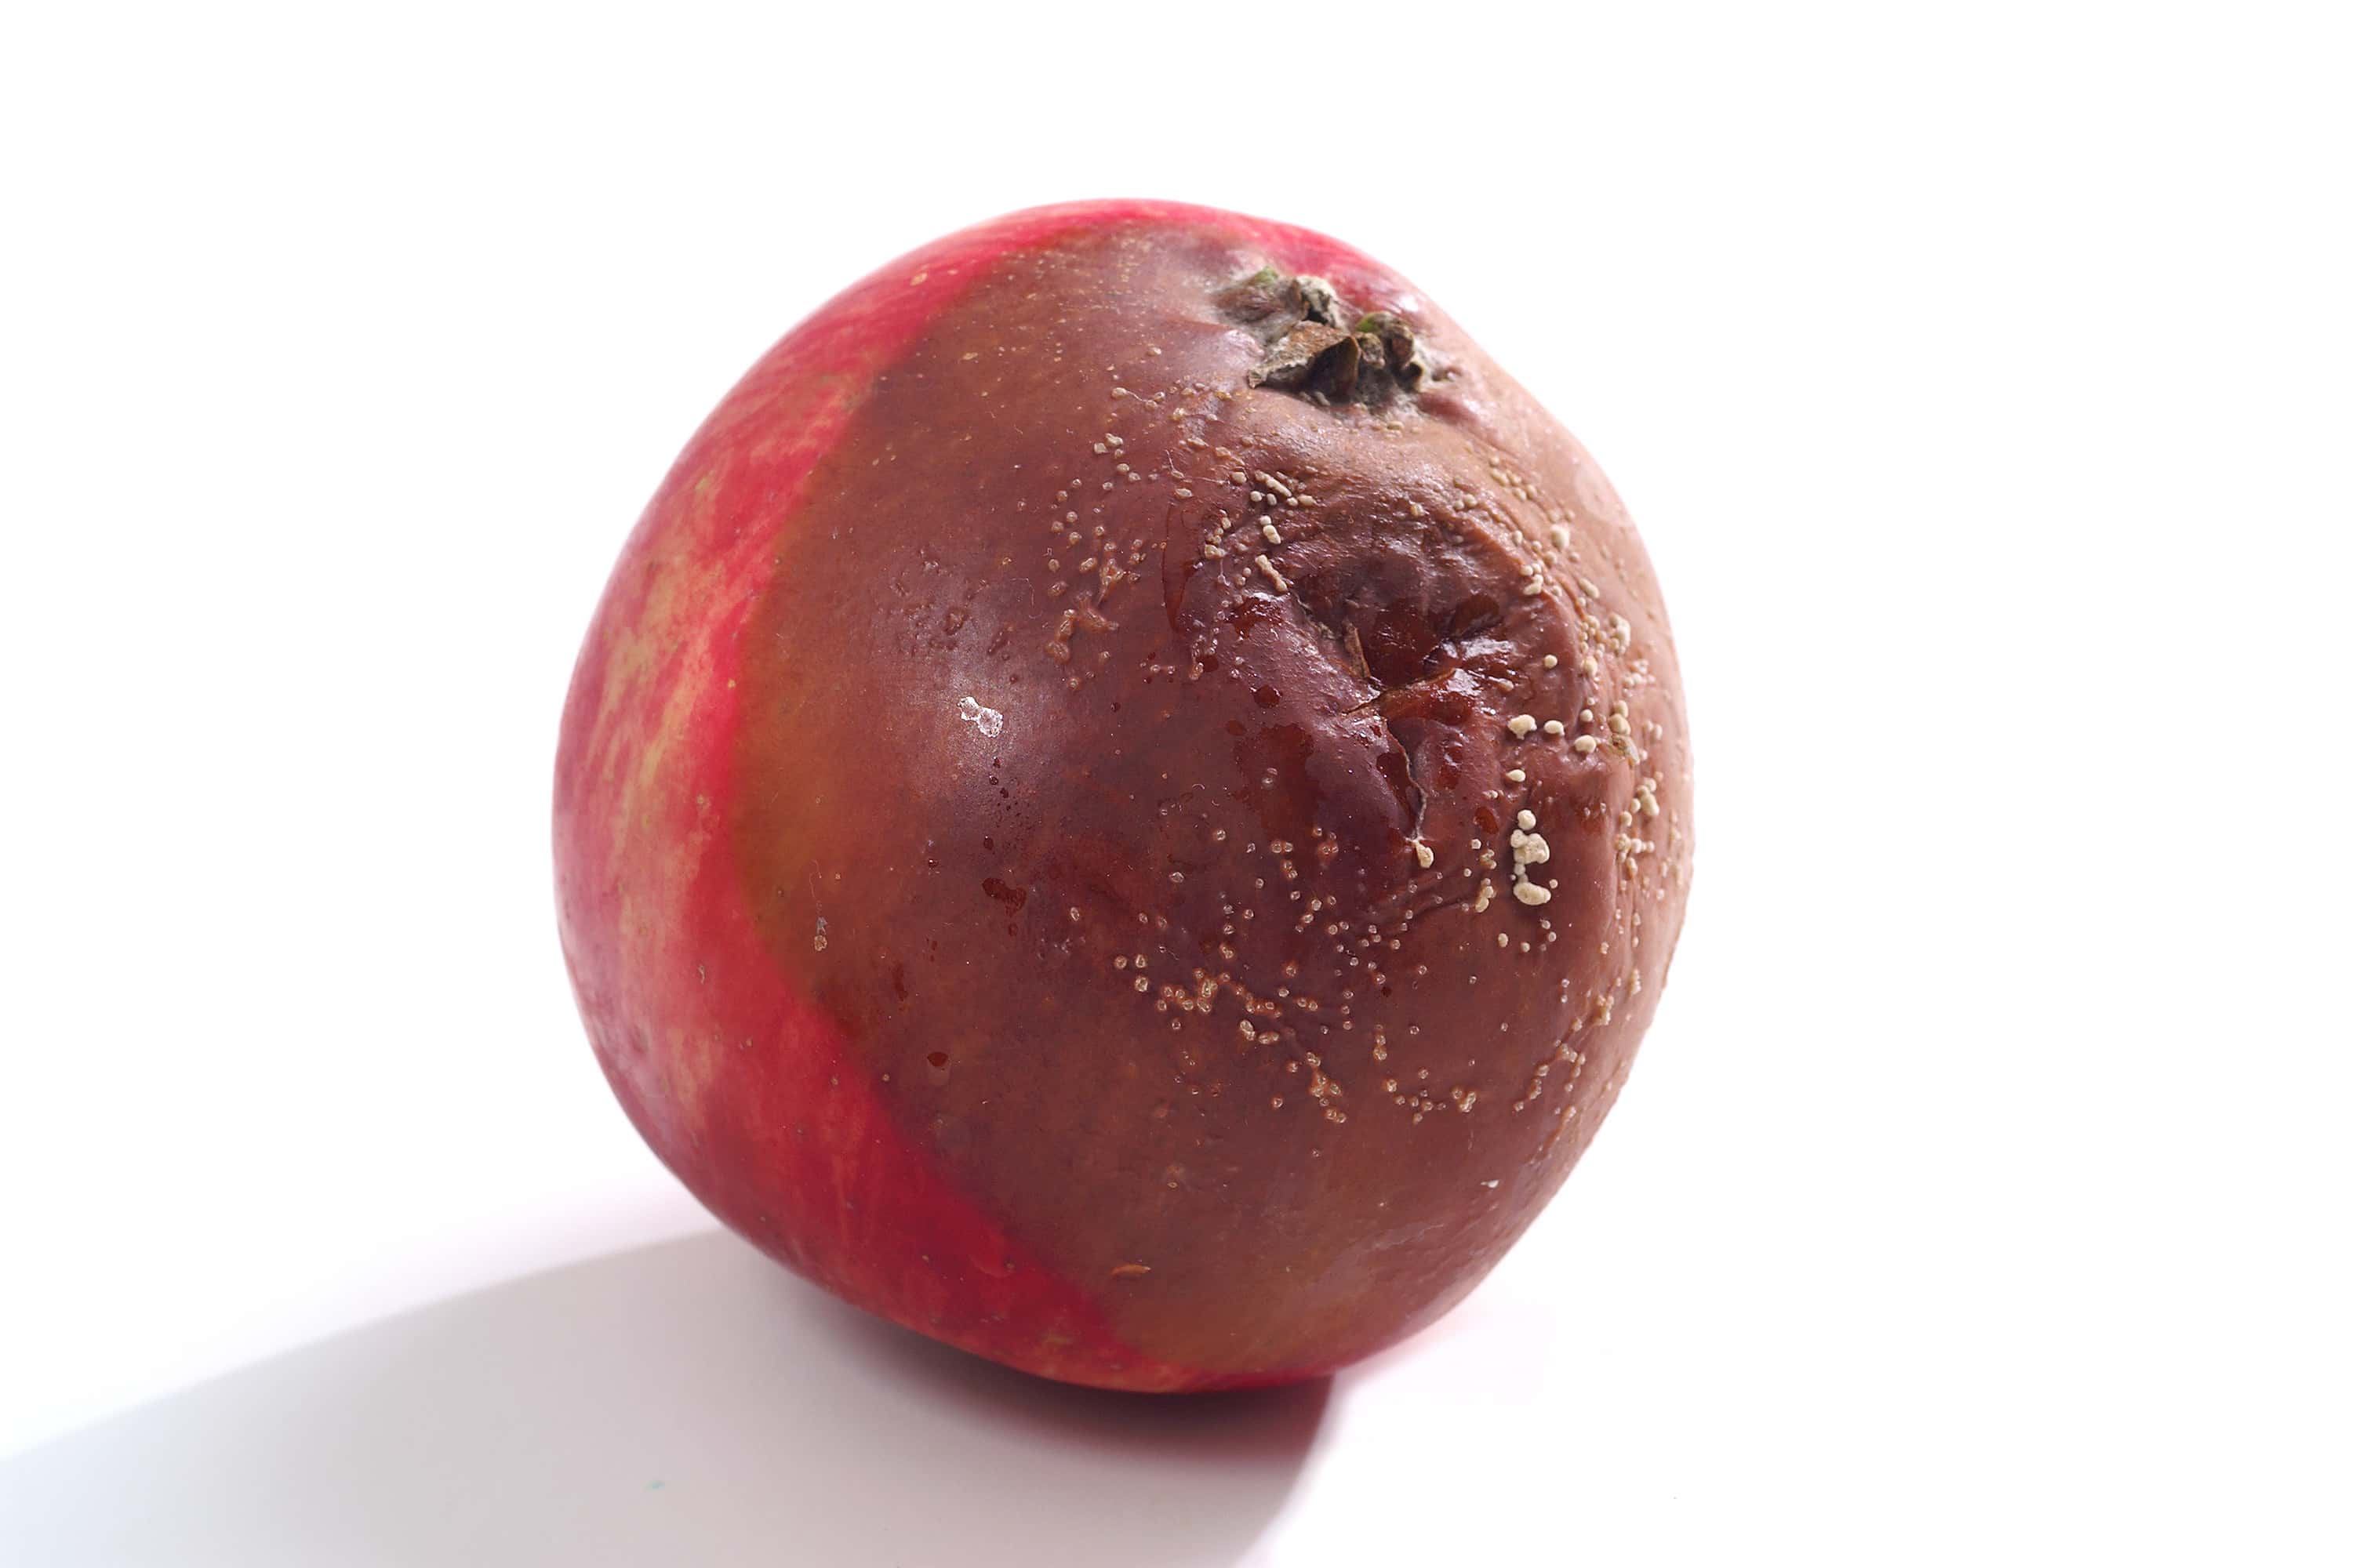 Najgroźniejsza choroba jabłek to gorzka zgniliznajpeg